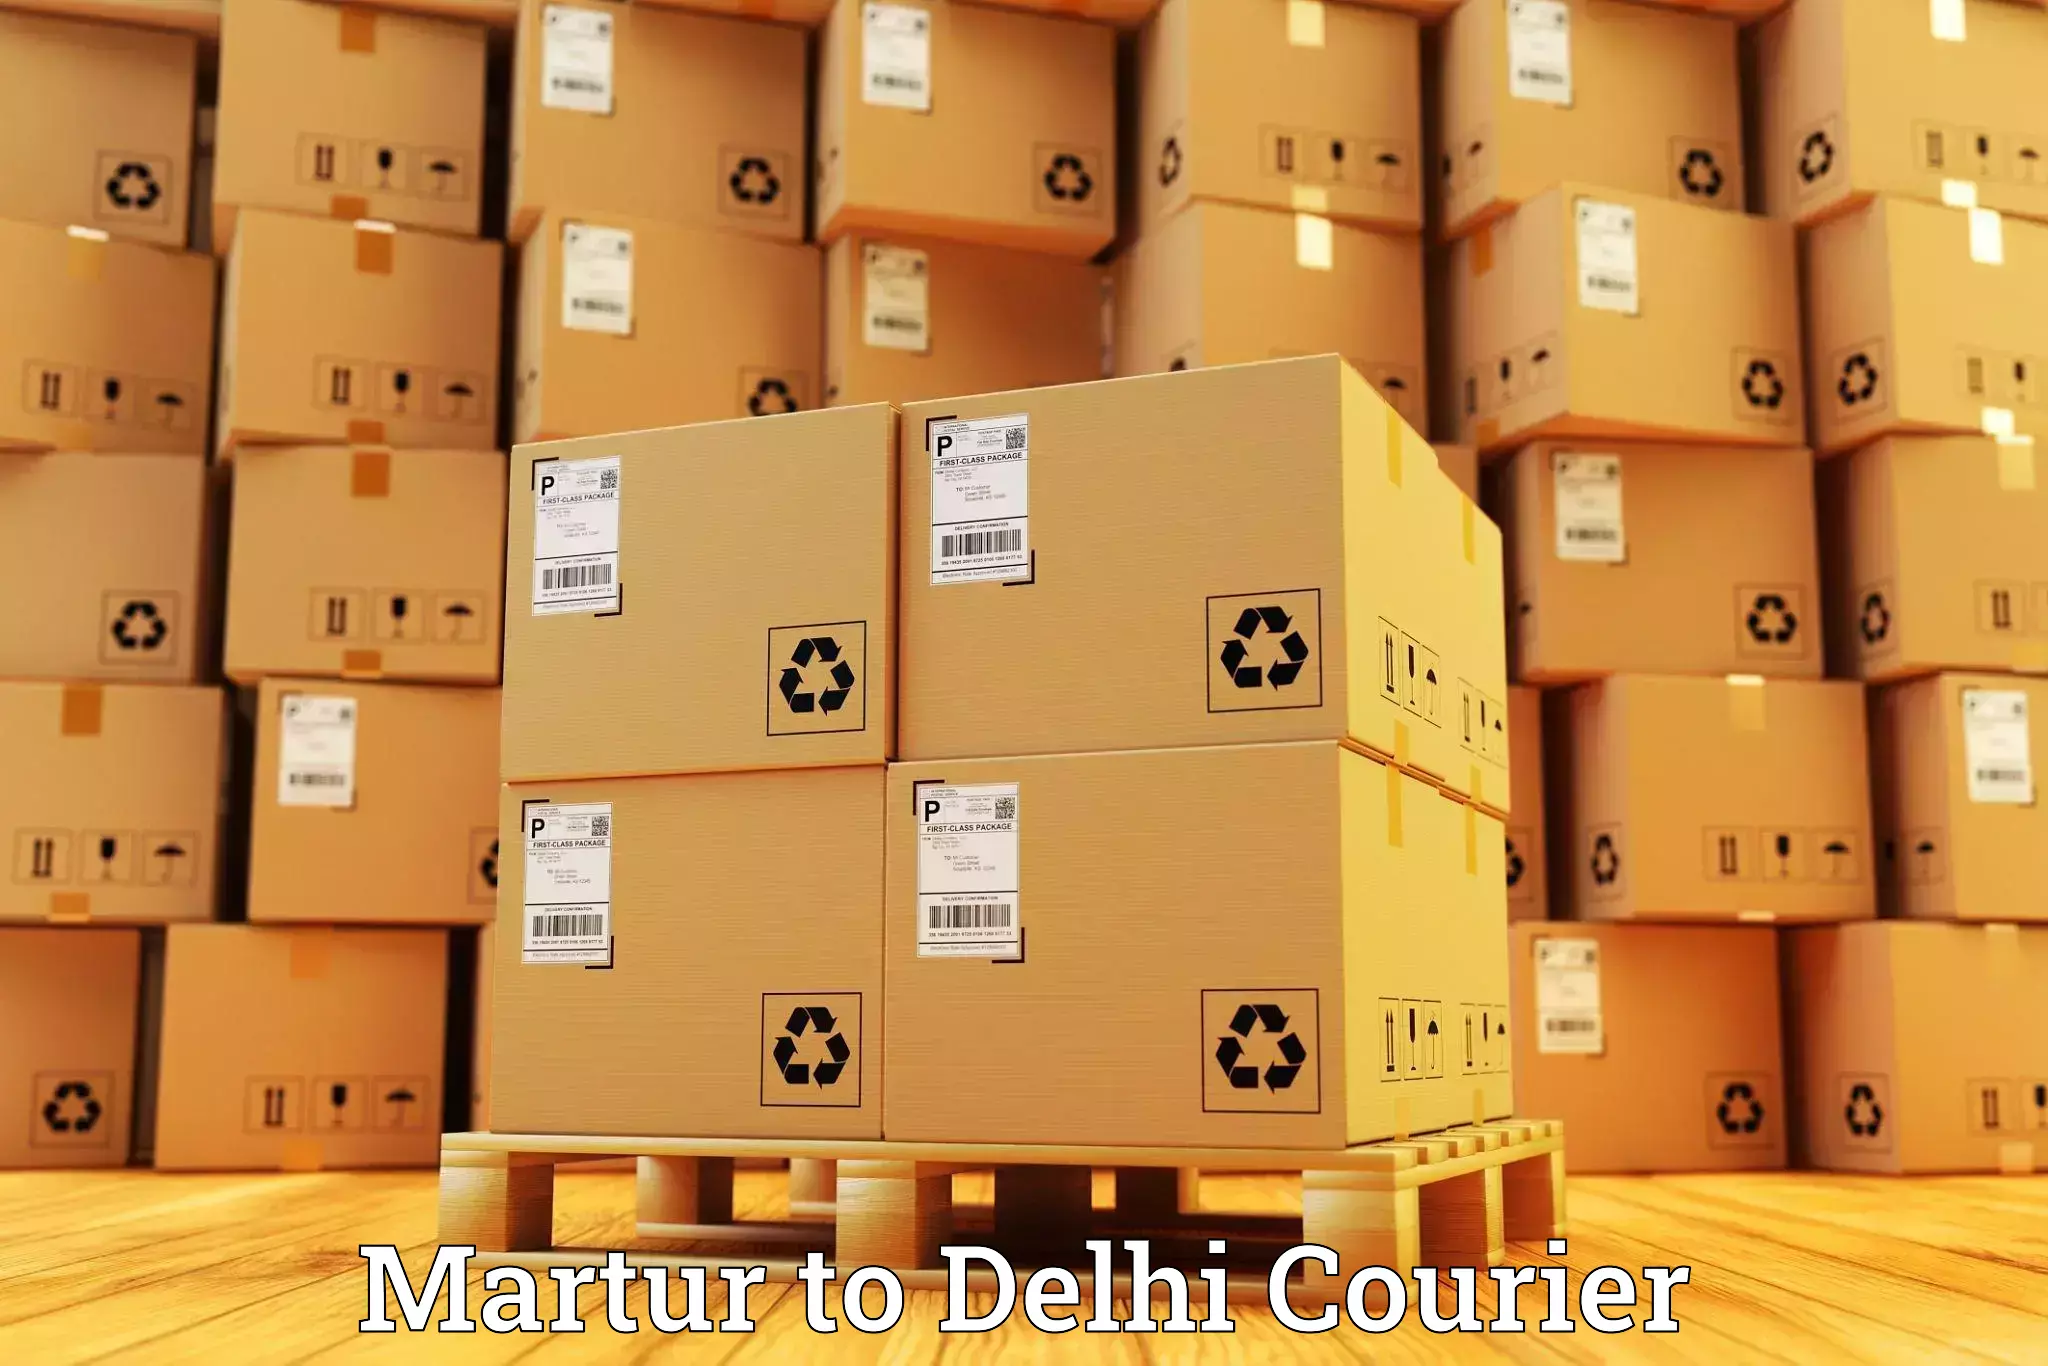 Express postal services Martur to NIT Delhi